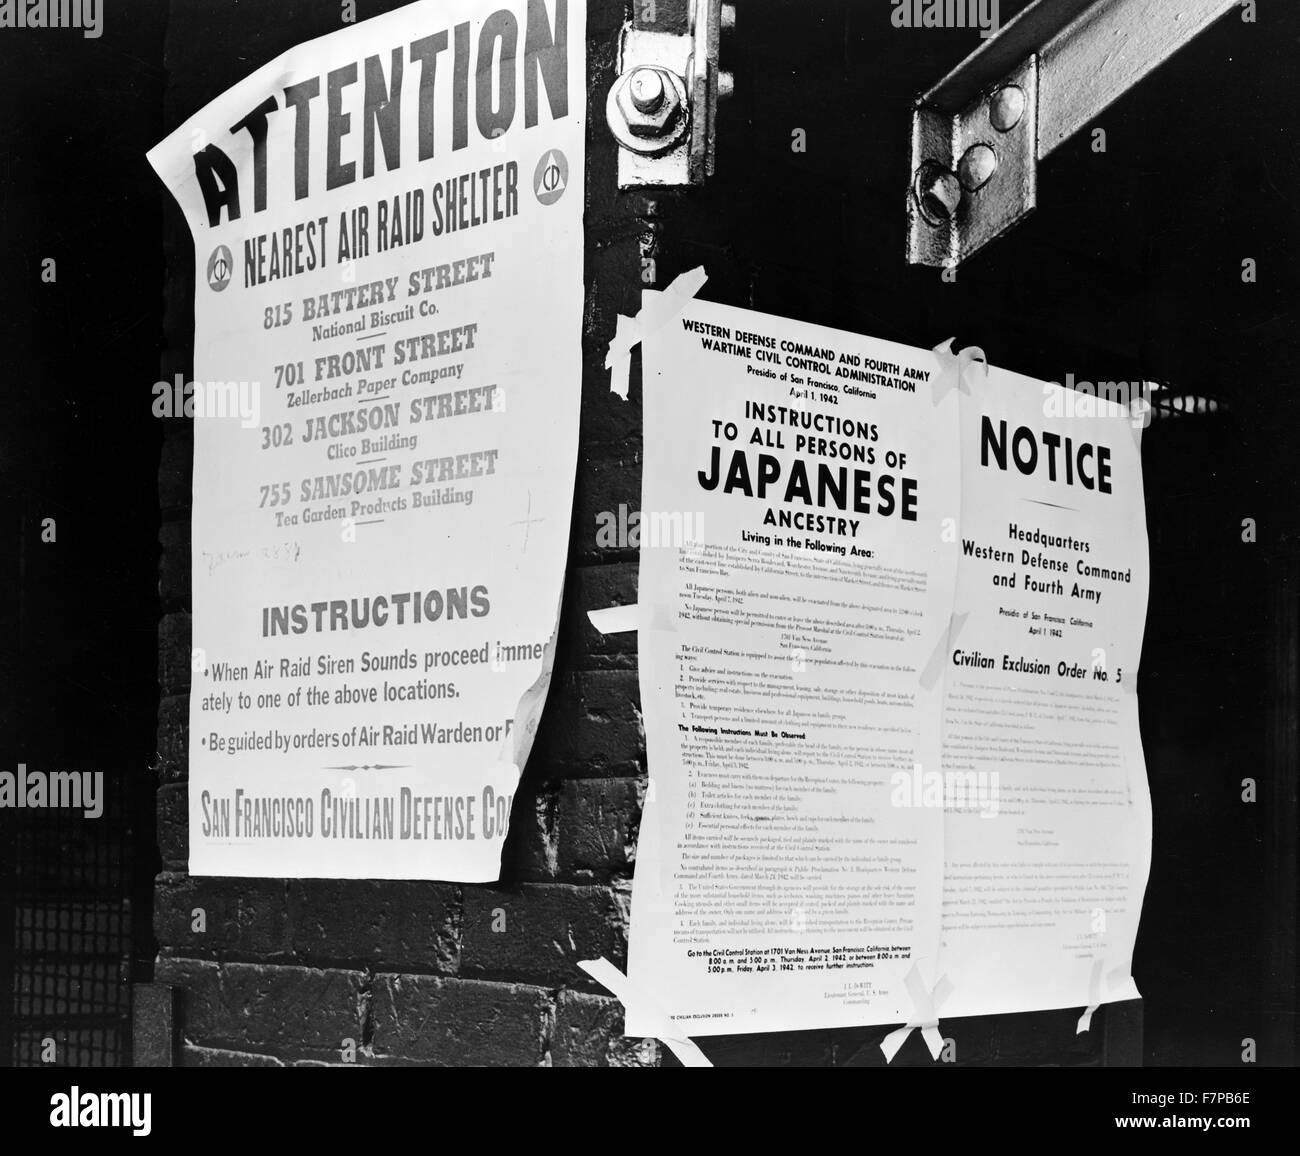 La Seconde Guerre mondiale, deux civils américains afin d'exclusion # 5, affiché au premier et rues avant, la direction dépose le 7 avril par des personnes d'origine japonaise, à partir de la première section de San Francisco d'être touchés par l'évacuation. Tirage photographique : la gélatine d'argent. Banque D'Images